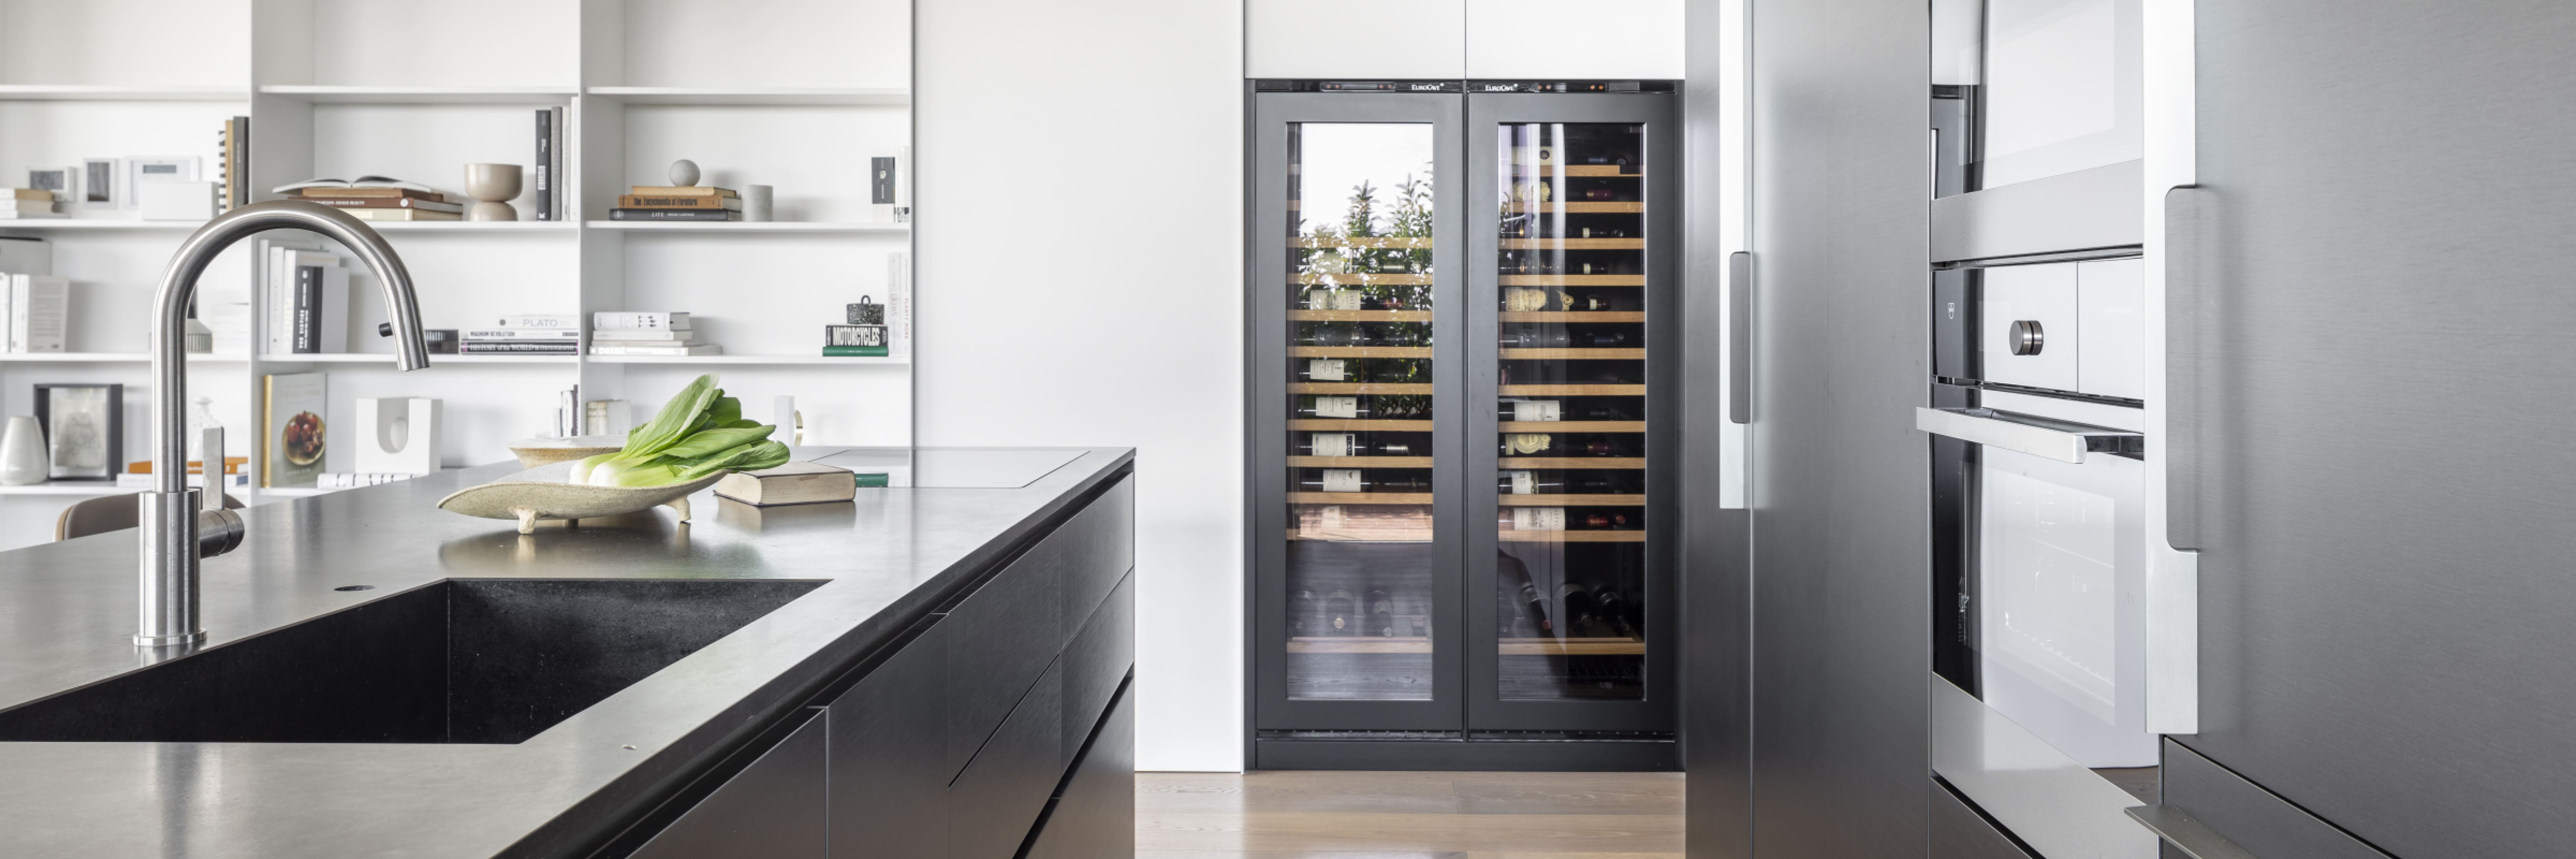 Zwei Weinklimaschränk integriert in den integrierten Küchenwandschrank – technische Glastür mit Anpassung der Schrankfronten.